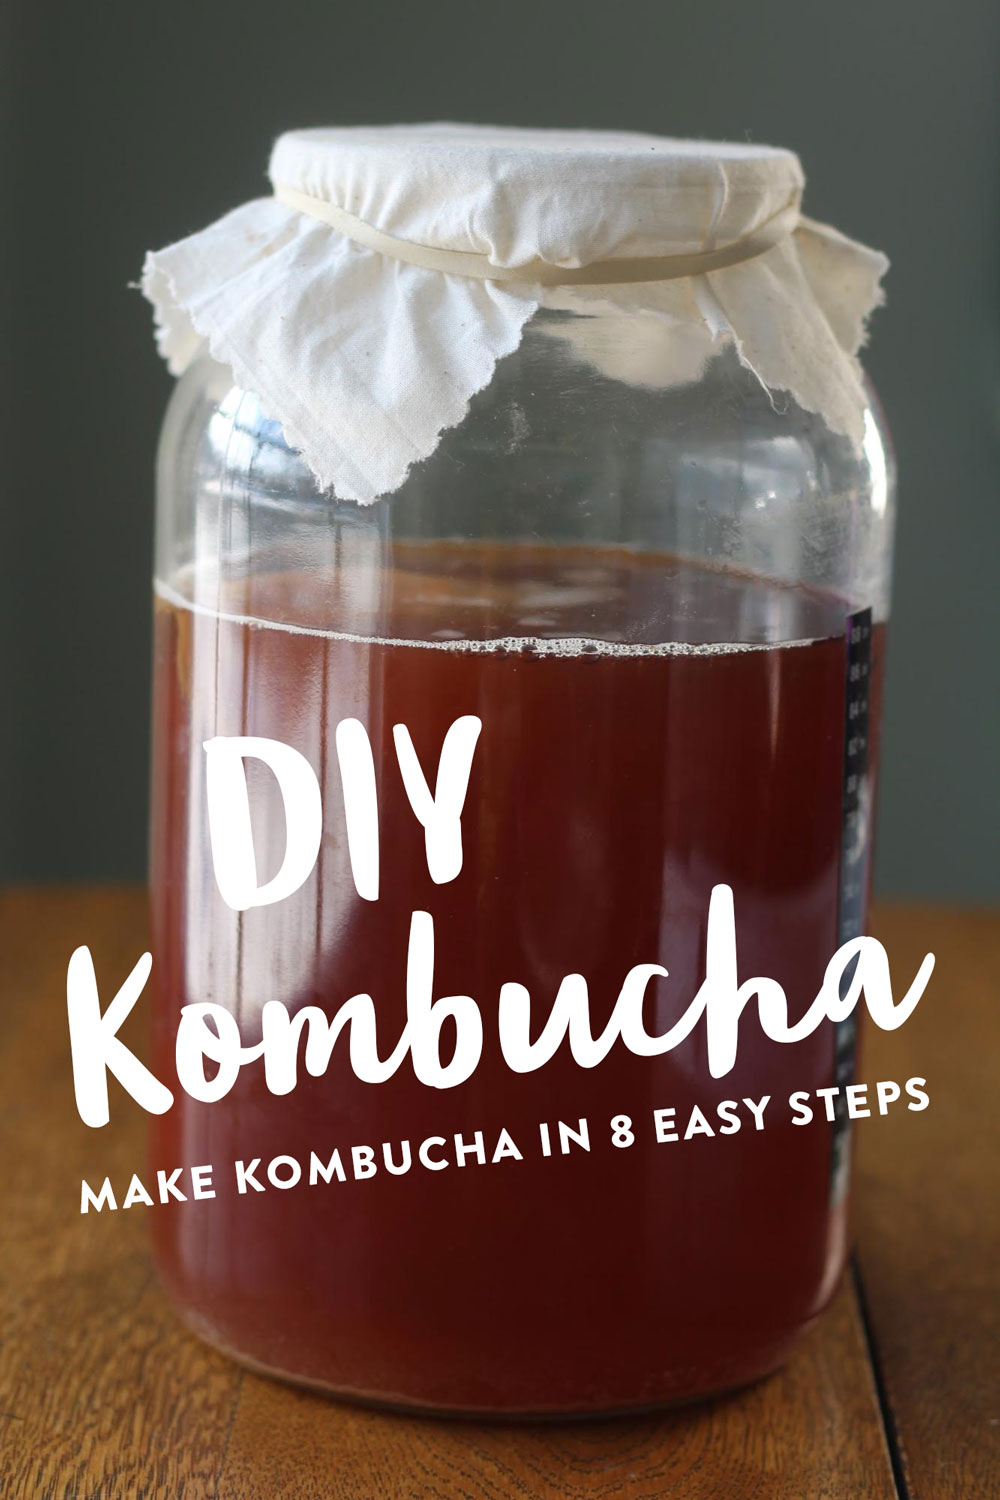 DIY kombucha in 8 easy steps